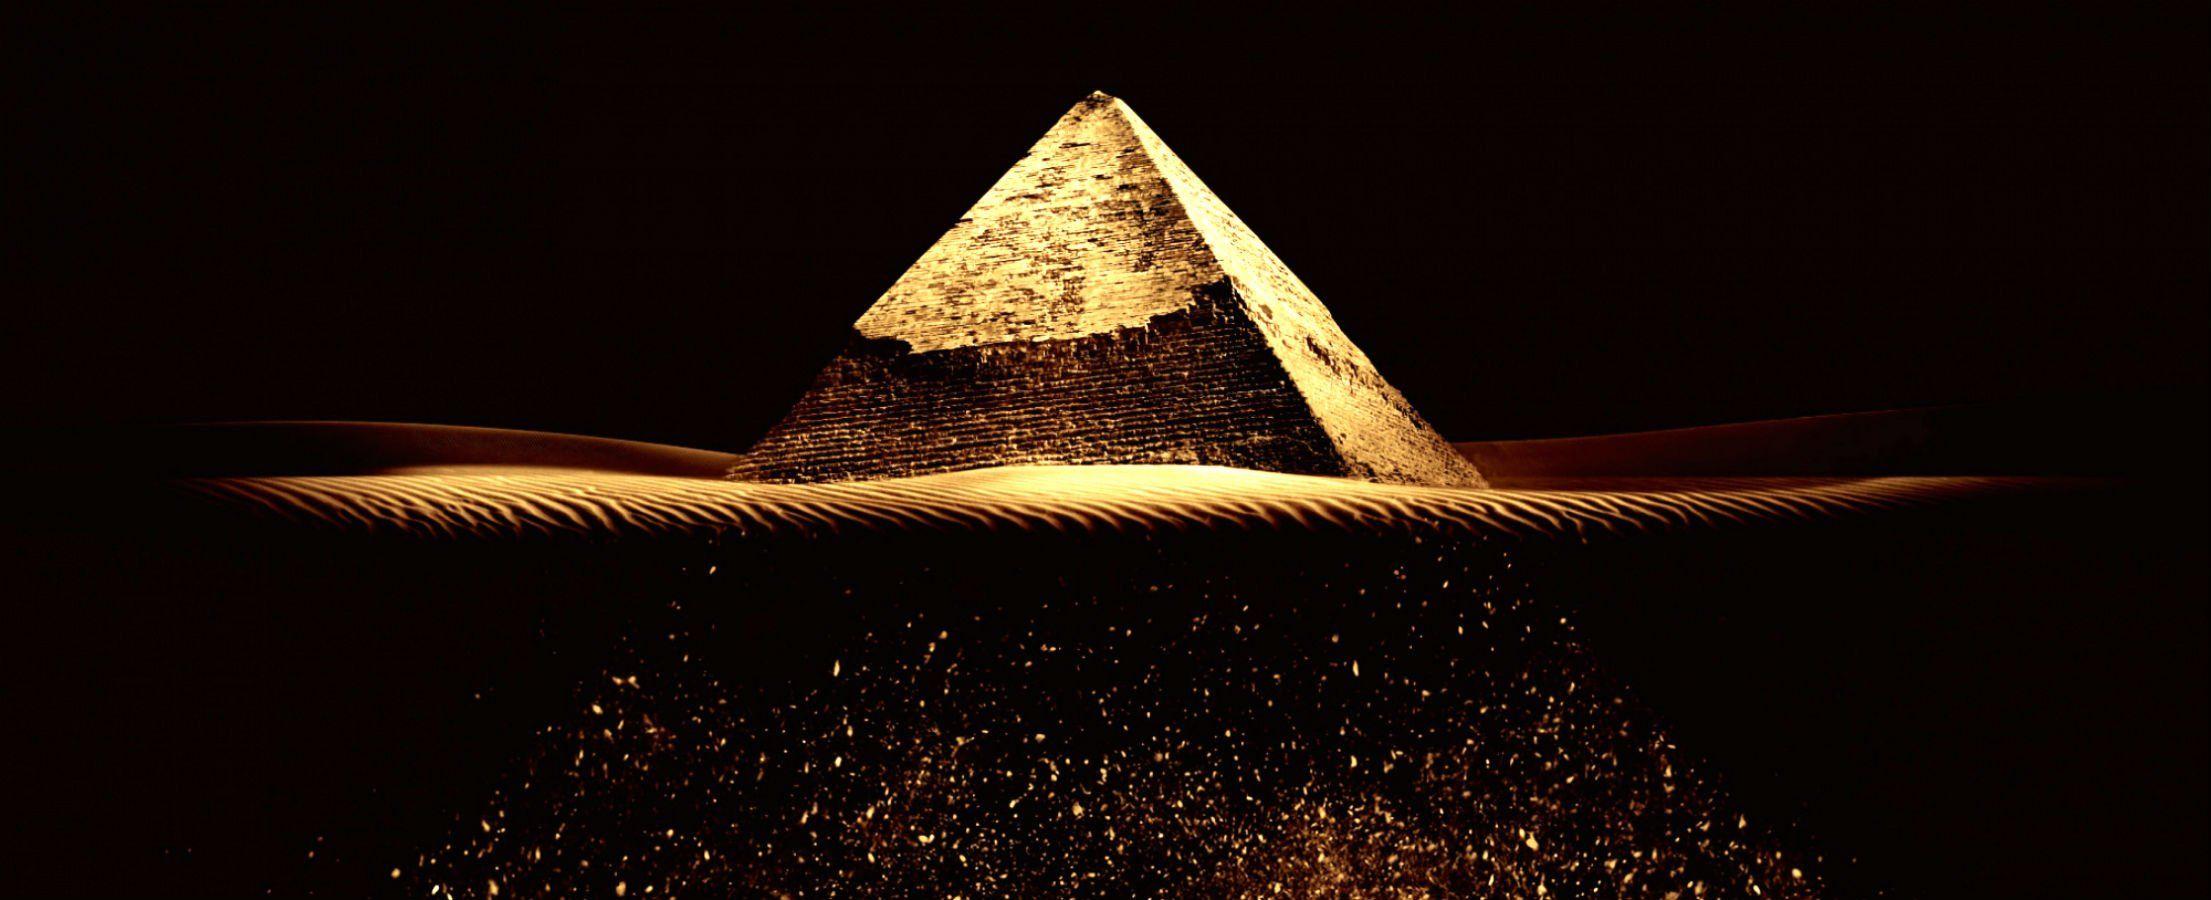 Pyramid Wallpaper. Top HDQ Pyramid Image, Wallpaper